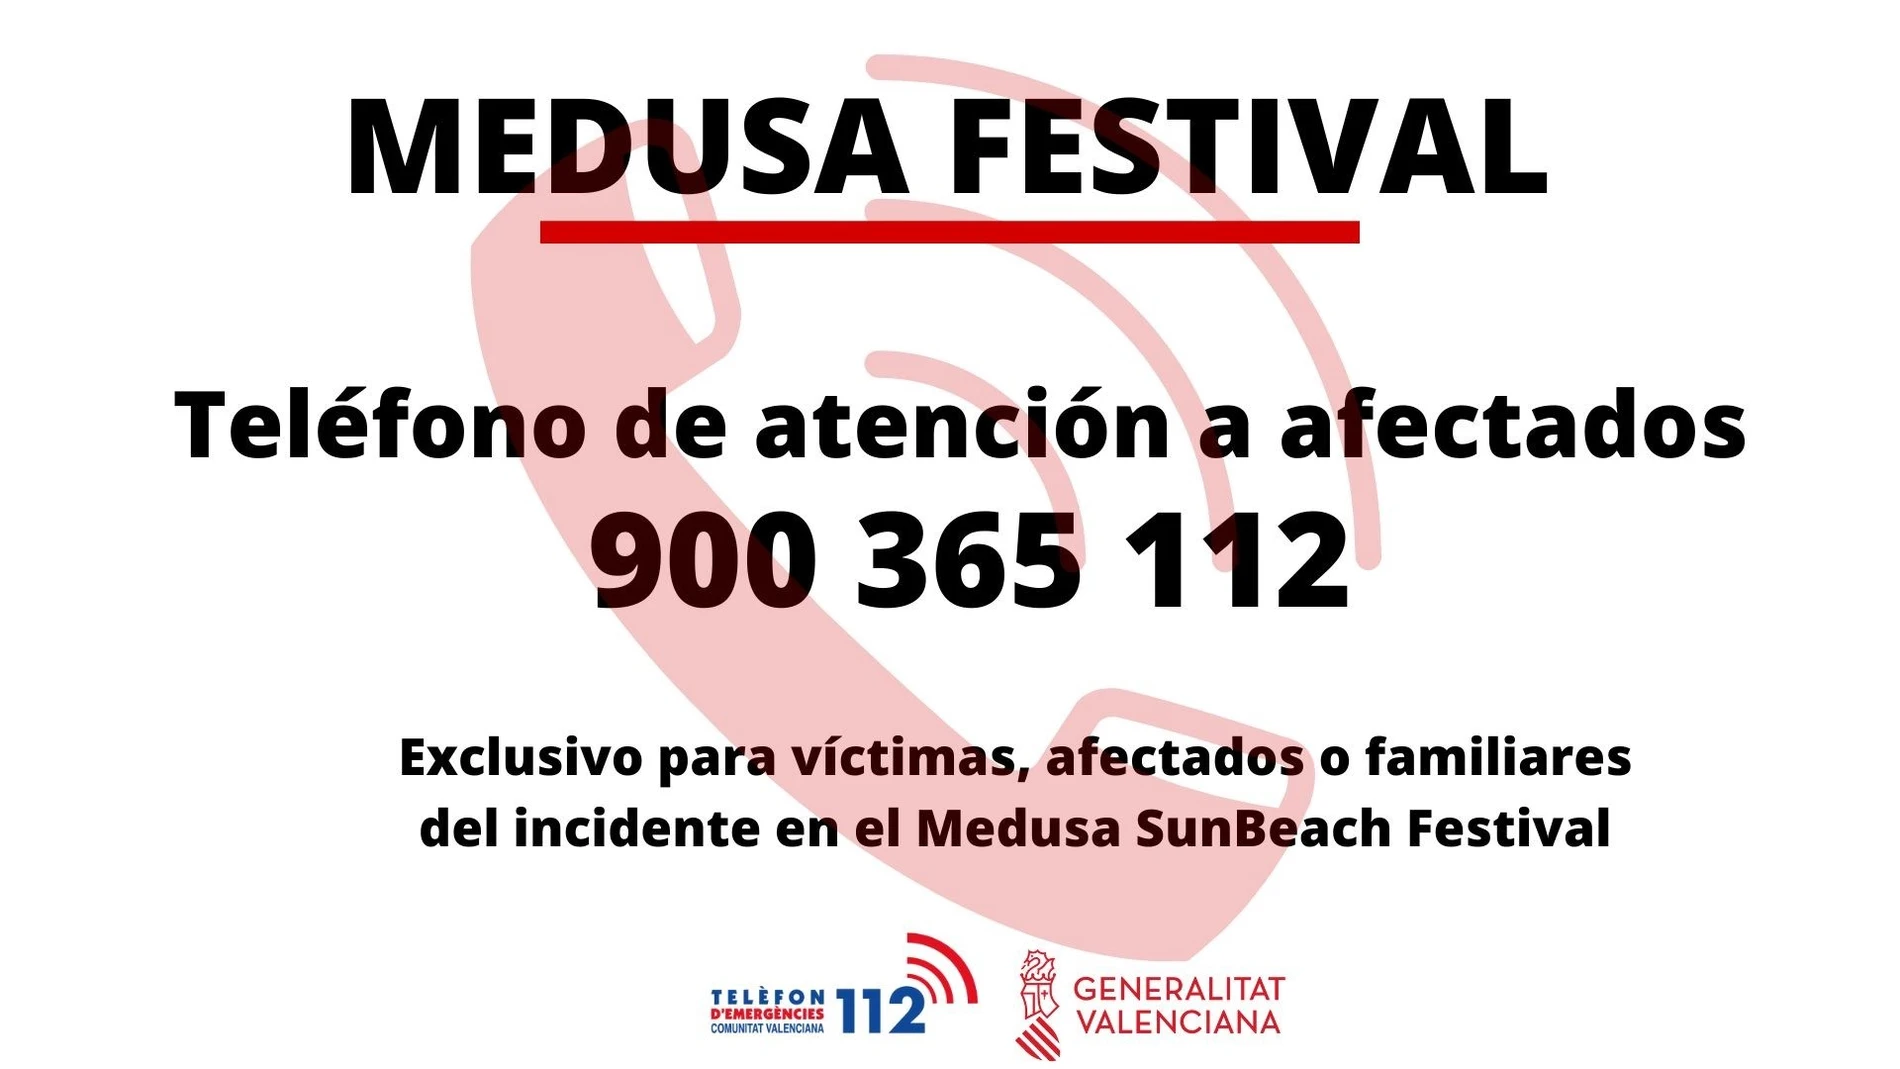 Teléfono de asistencia a afectados en el Medusa
GVA
13/08/2022